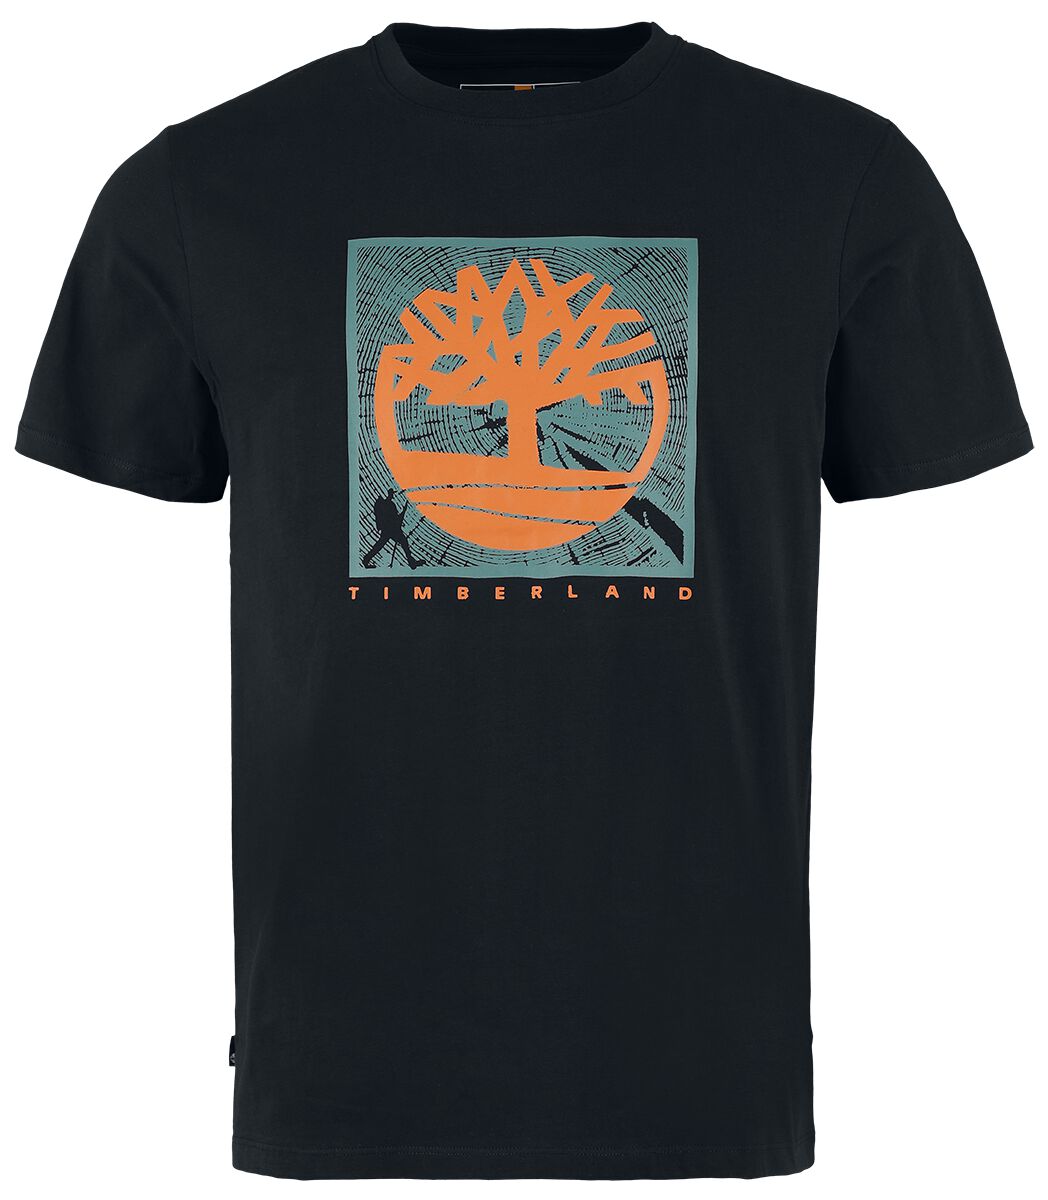 Timberland T-Shirt - Short Sleeve Front Graphic Tee - S bis XXL - für Männer - Größe L - schwarz